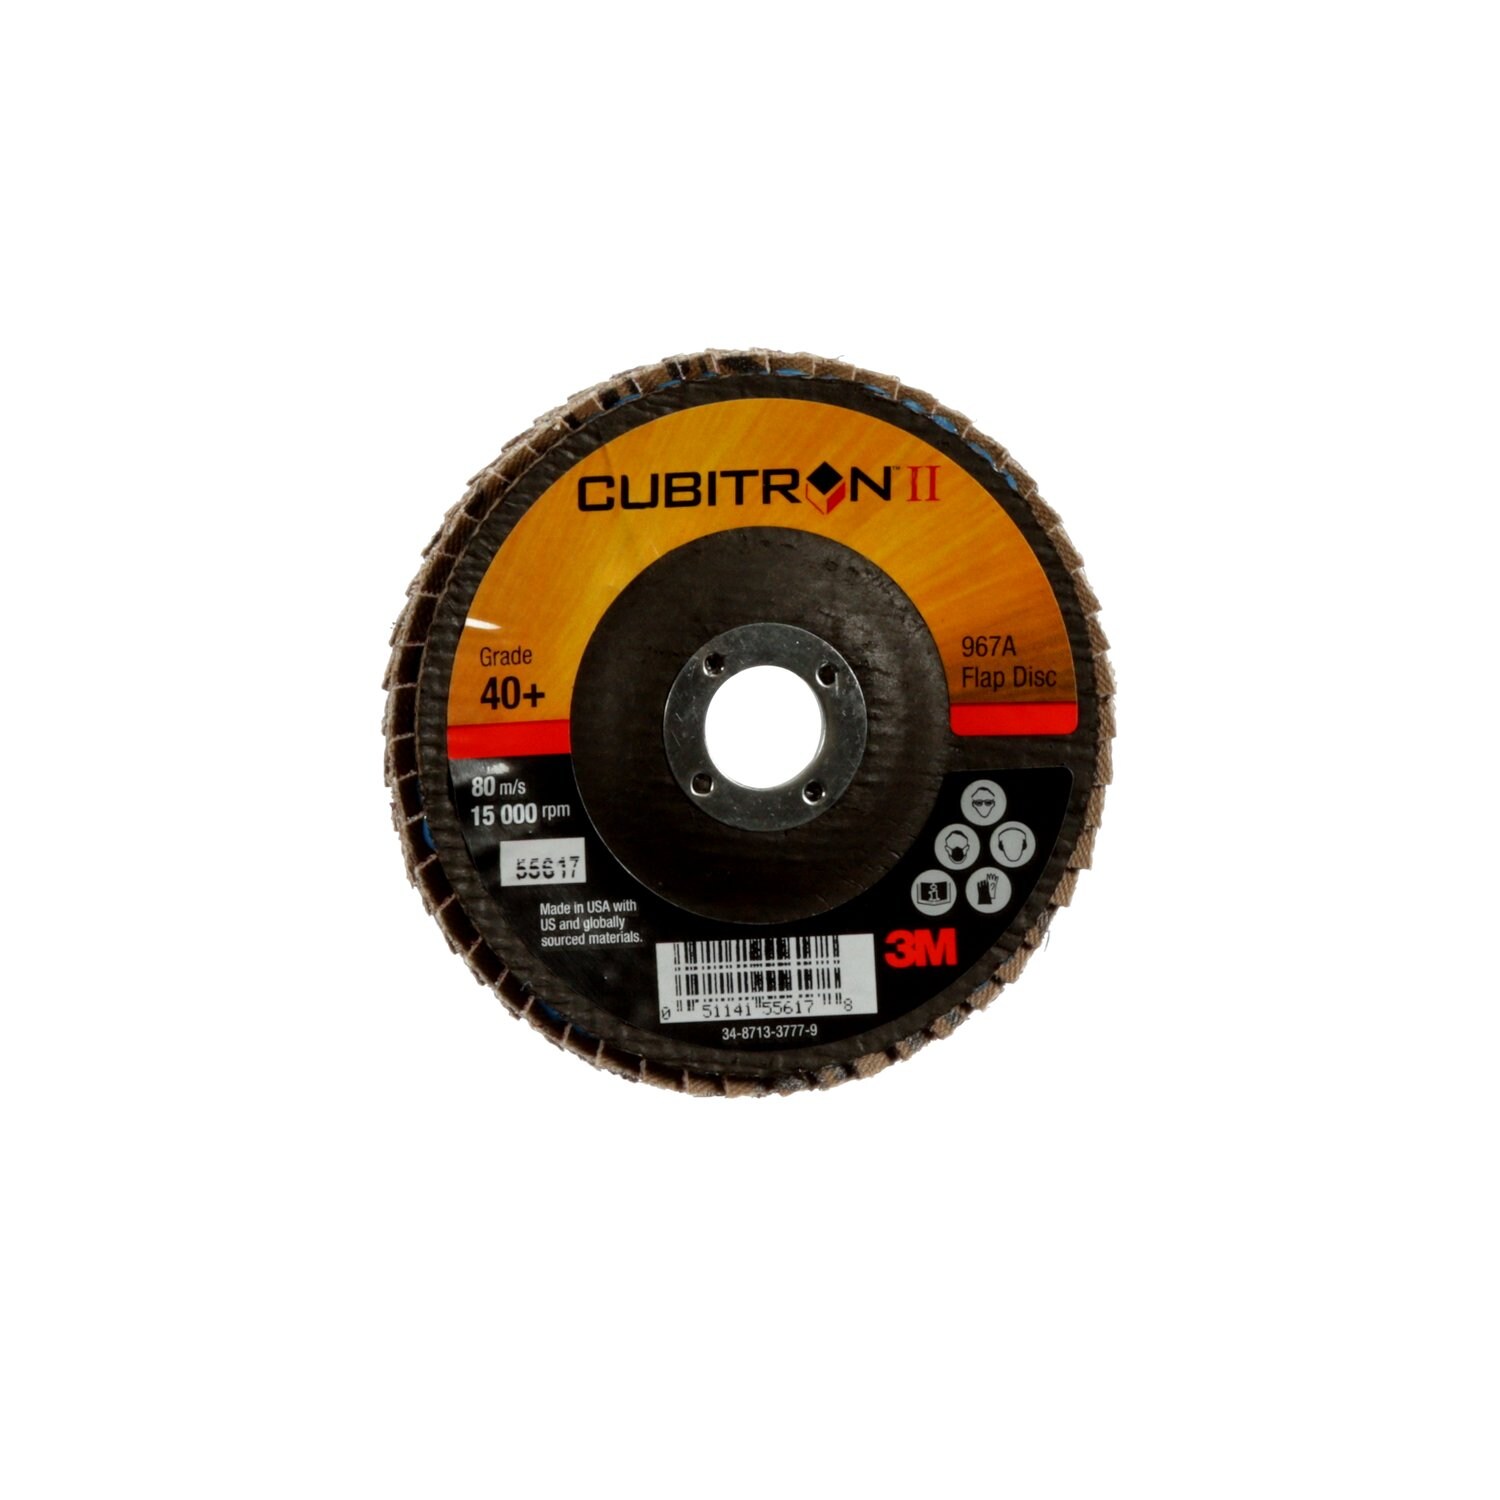 7100097661 - 3M Cubitron II Flap Disc 967A, 40+, T29, 4 in x 5/8 in, 10 ea/Case